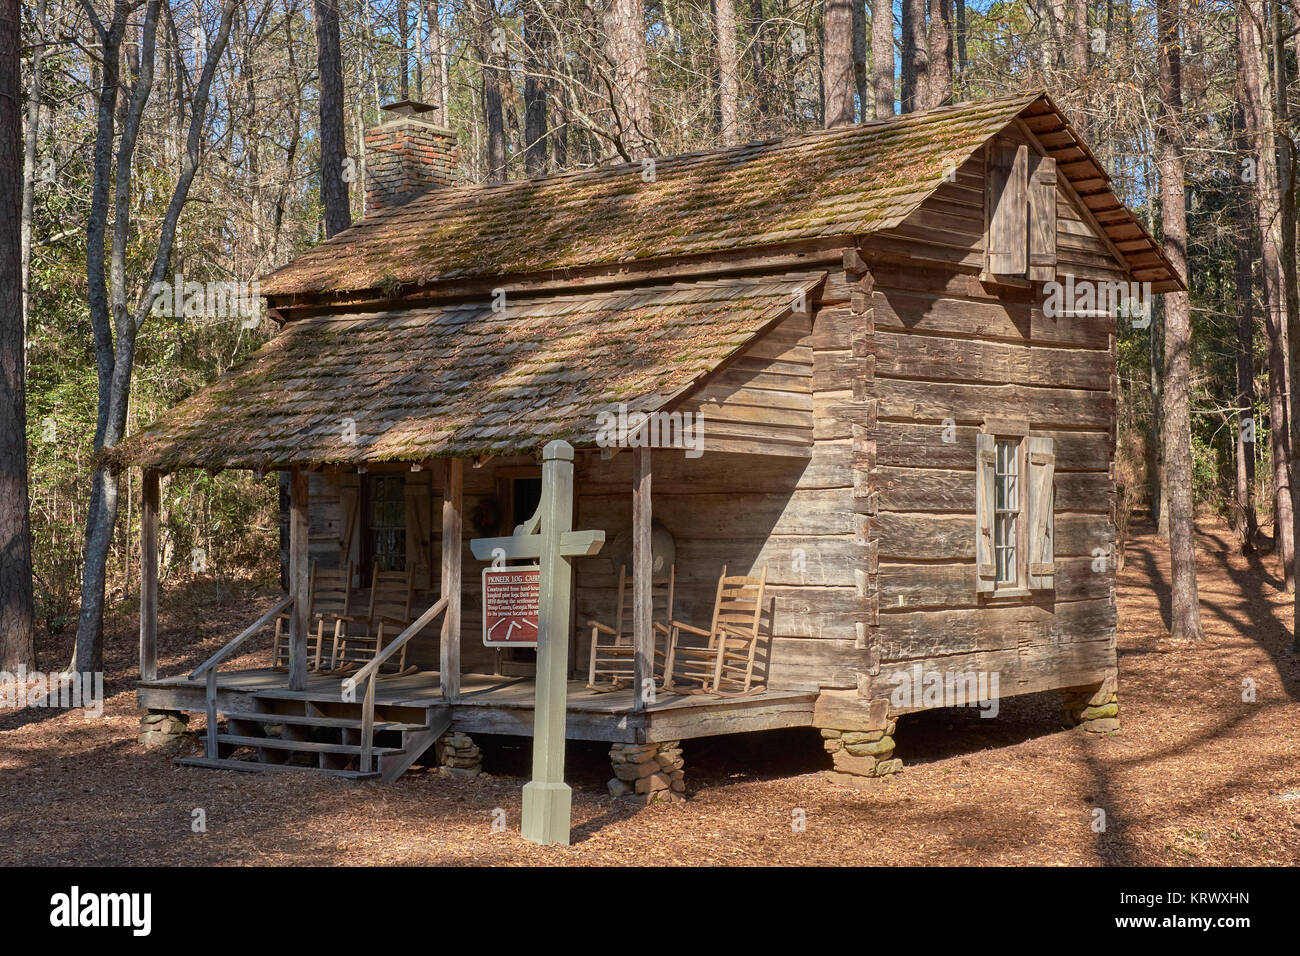 Vintage pioneer log cabin construit dans les années 1830 sur l'affichage dans les jardins de Calloway, Pine Mountain en Géorgie, aux États-Unis. Banque D'Images